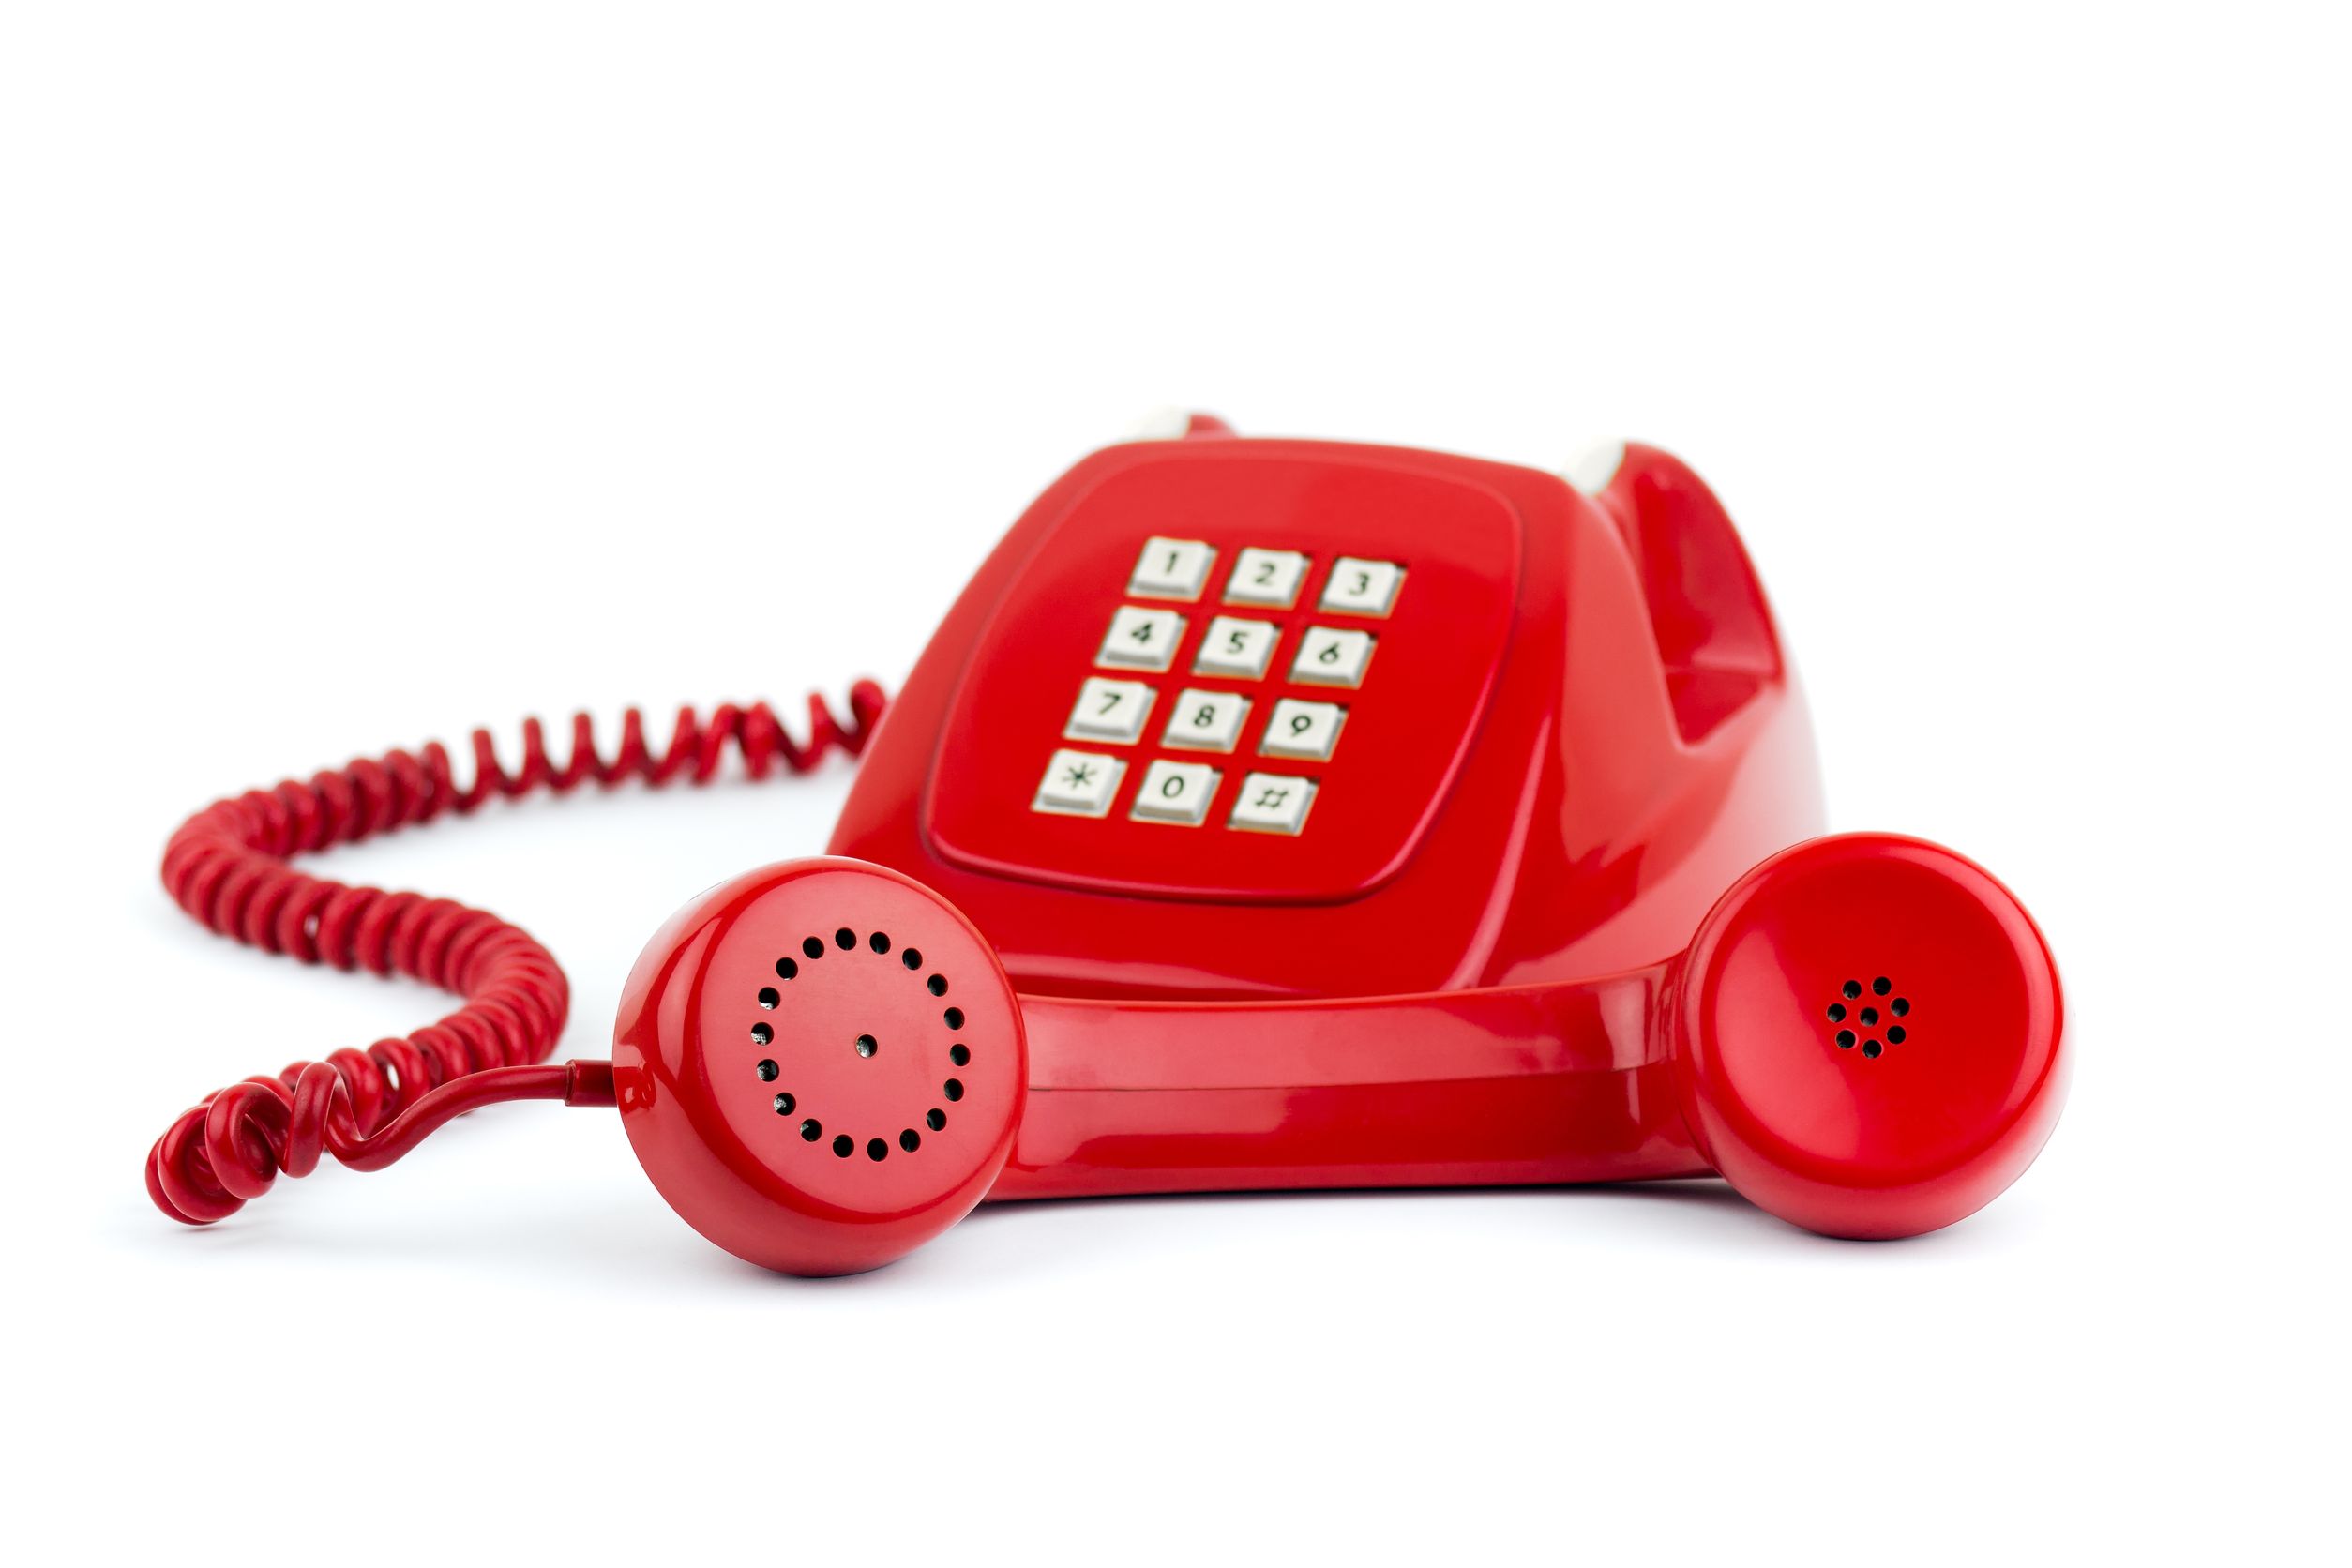 Горячая линия б. Красный телефон. Горячая телефонная линия. Телефонная трубка. Телефон проводной красный.